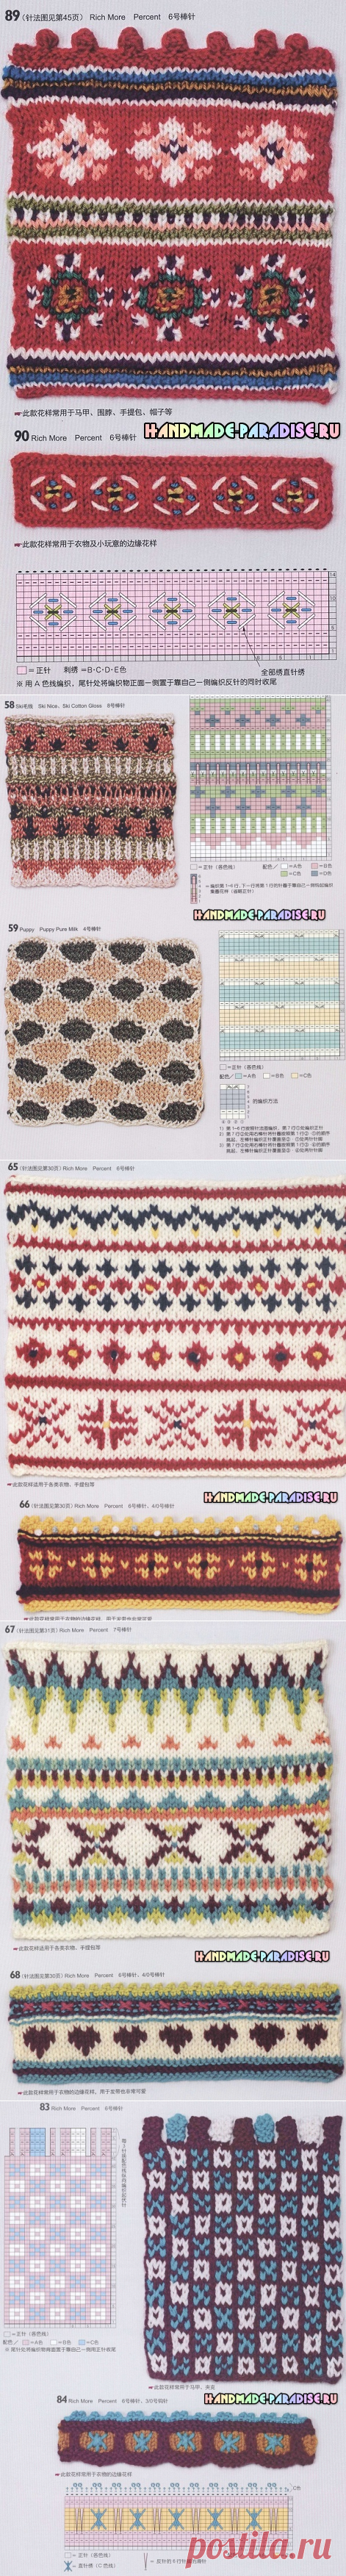 115 схем и модных узоров вязания спицами - Handmade-Paradise